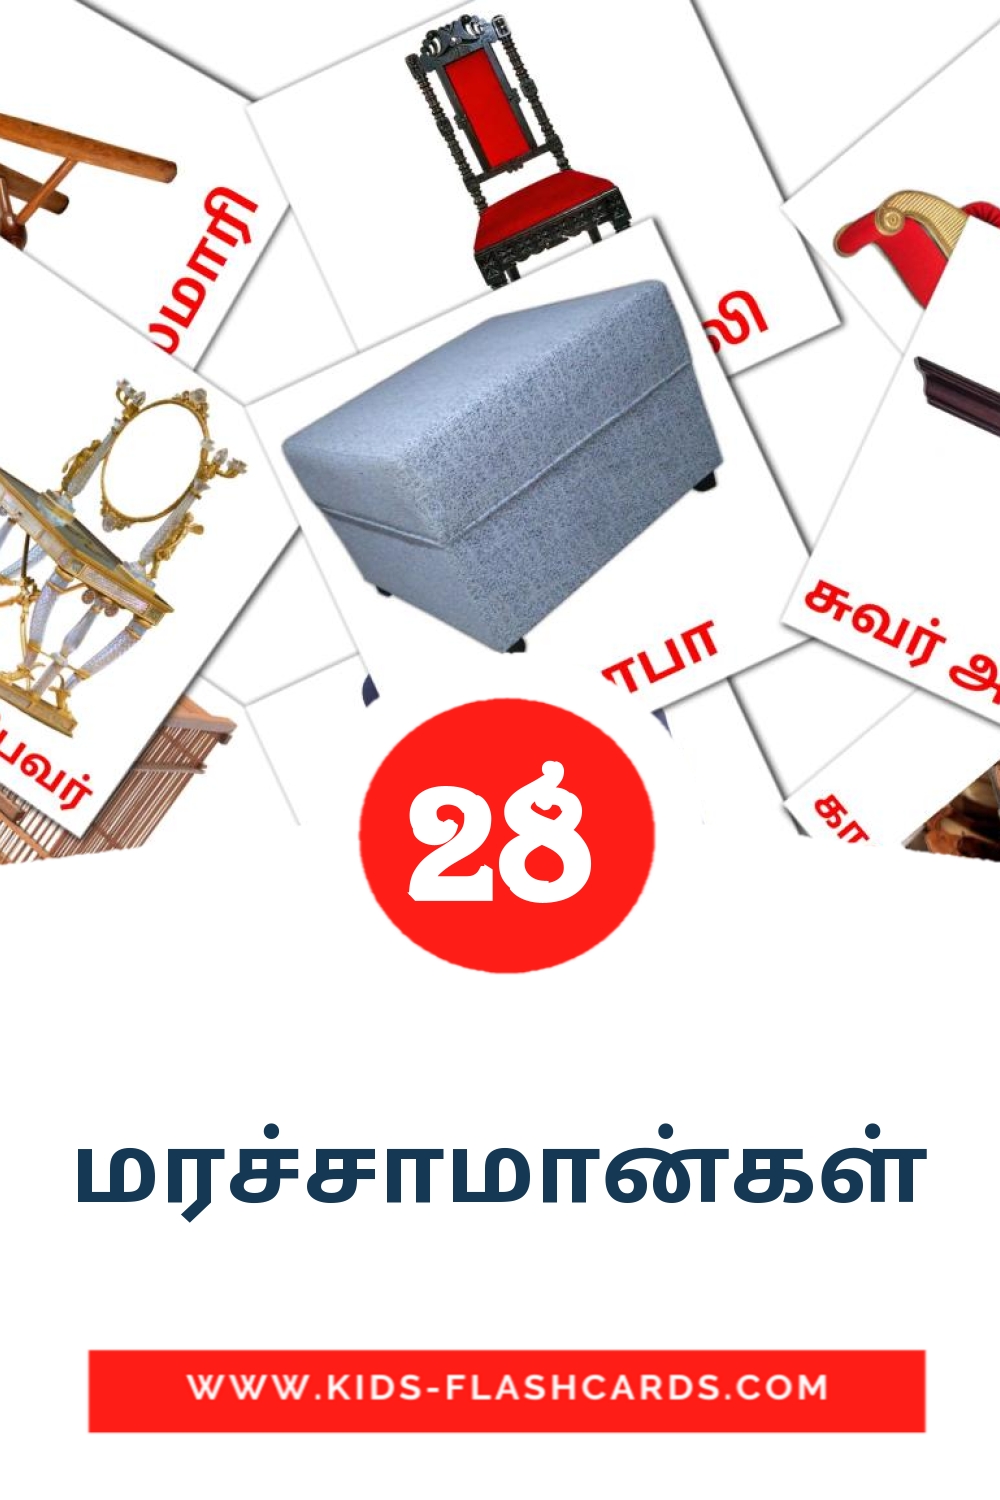 28 மரச்சாமான்கள் Bildkarten für den Kindergarten auf Tamilisch